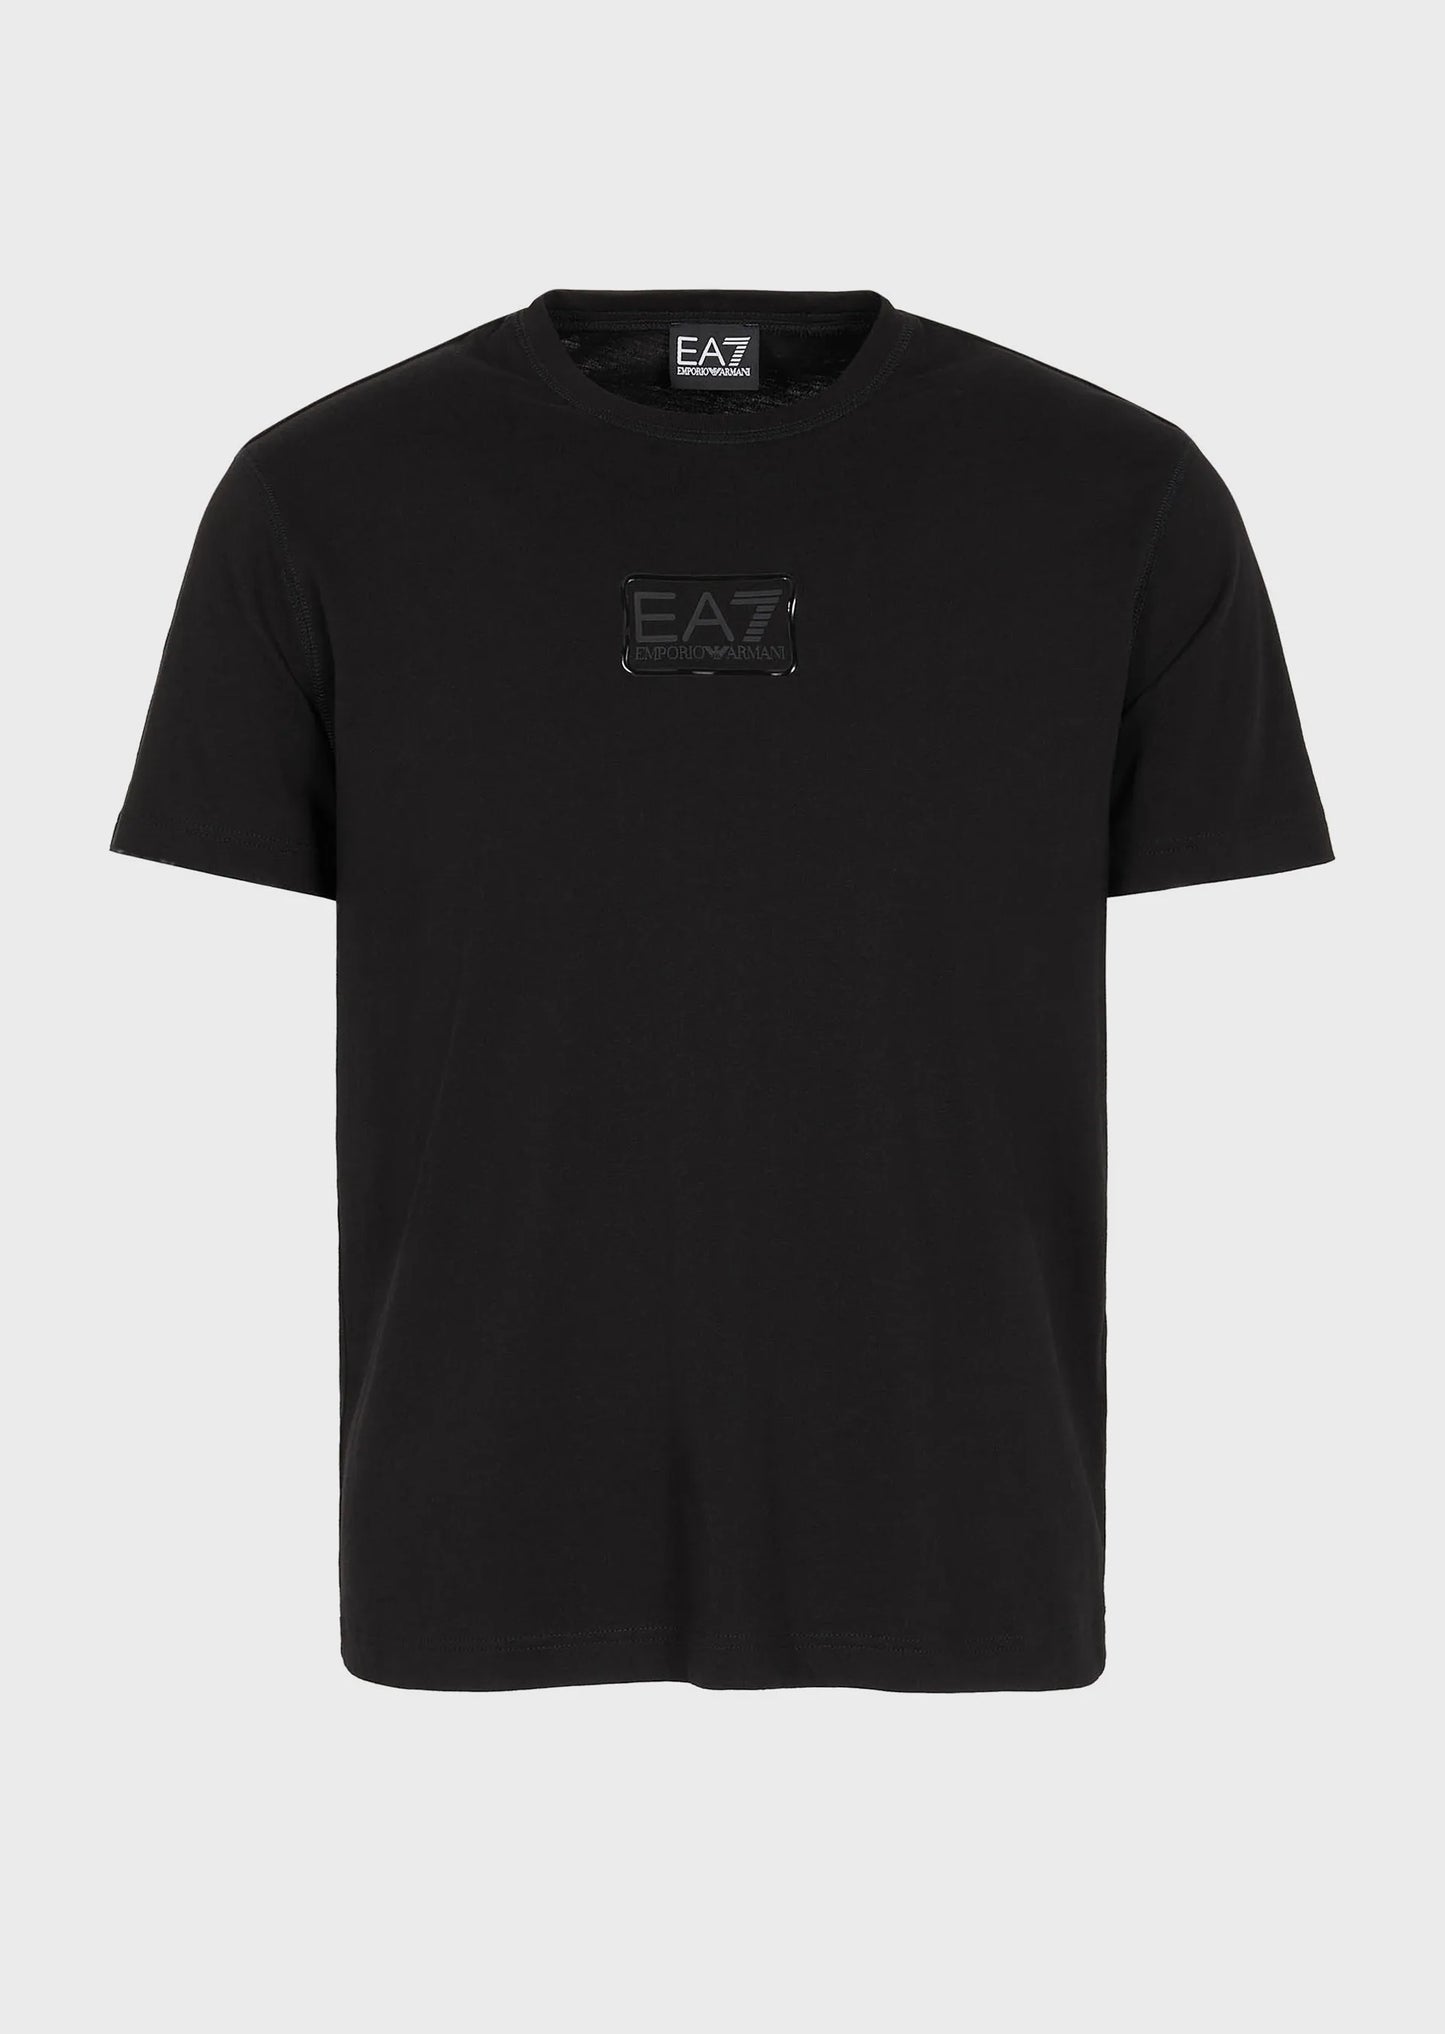 Camiseta EA7 - 6RPT05 PJ02Z 1200